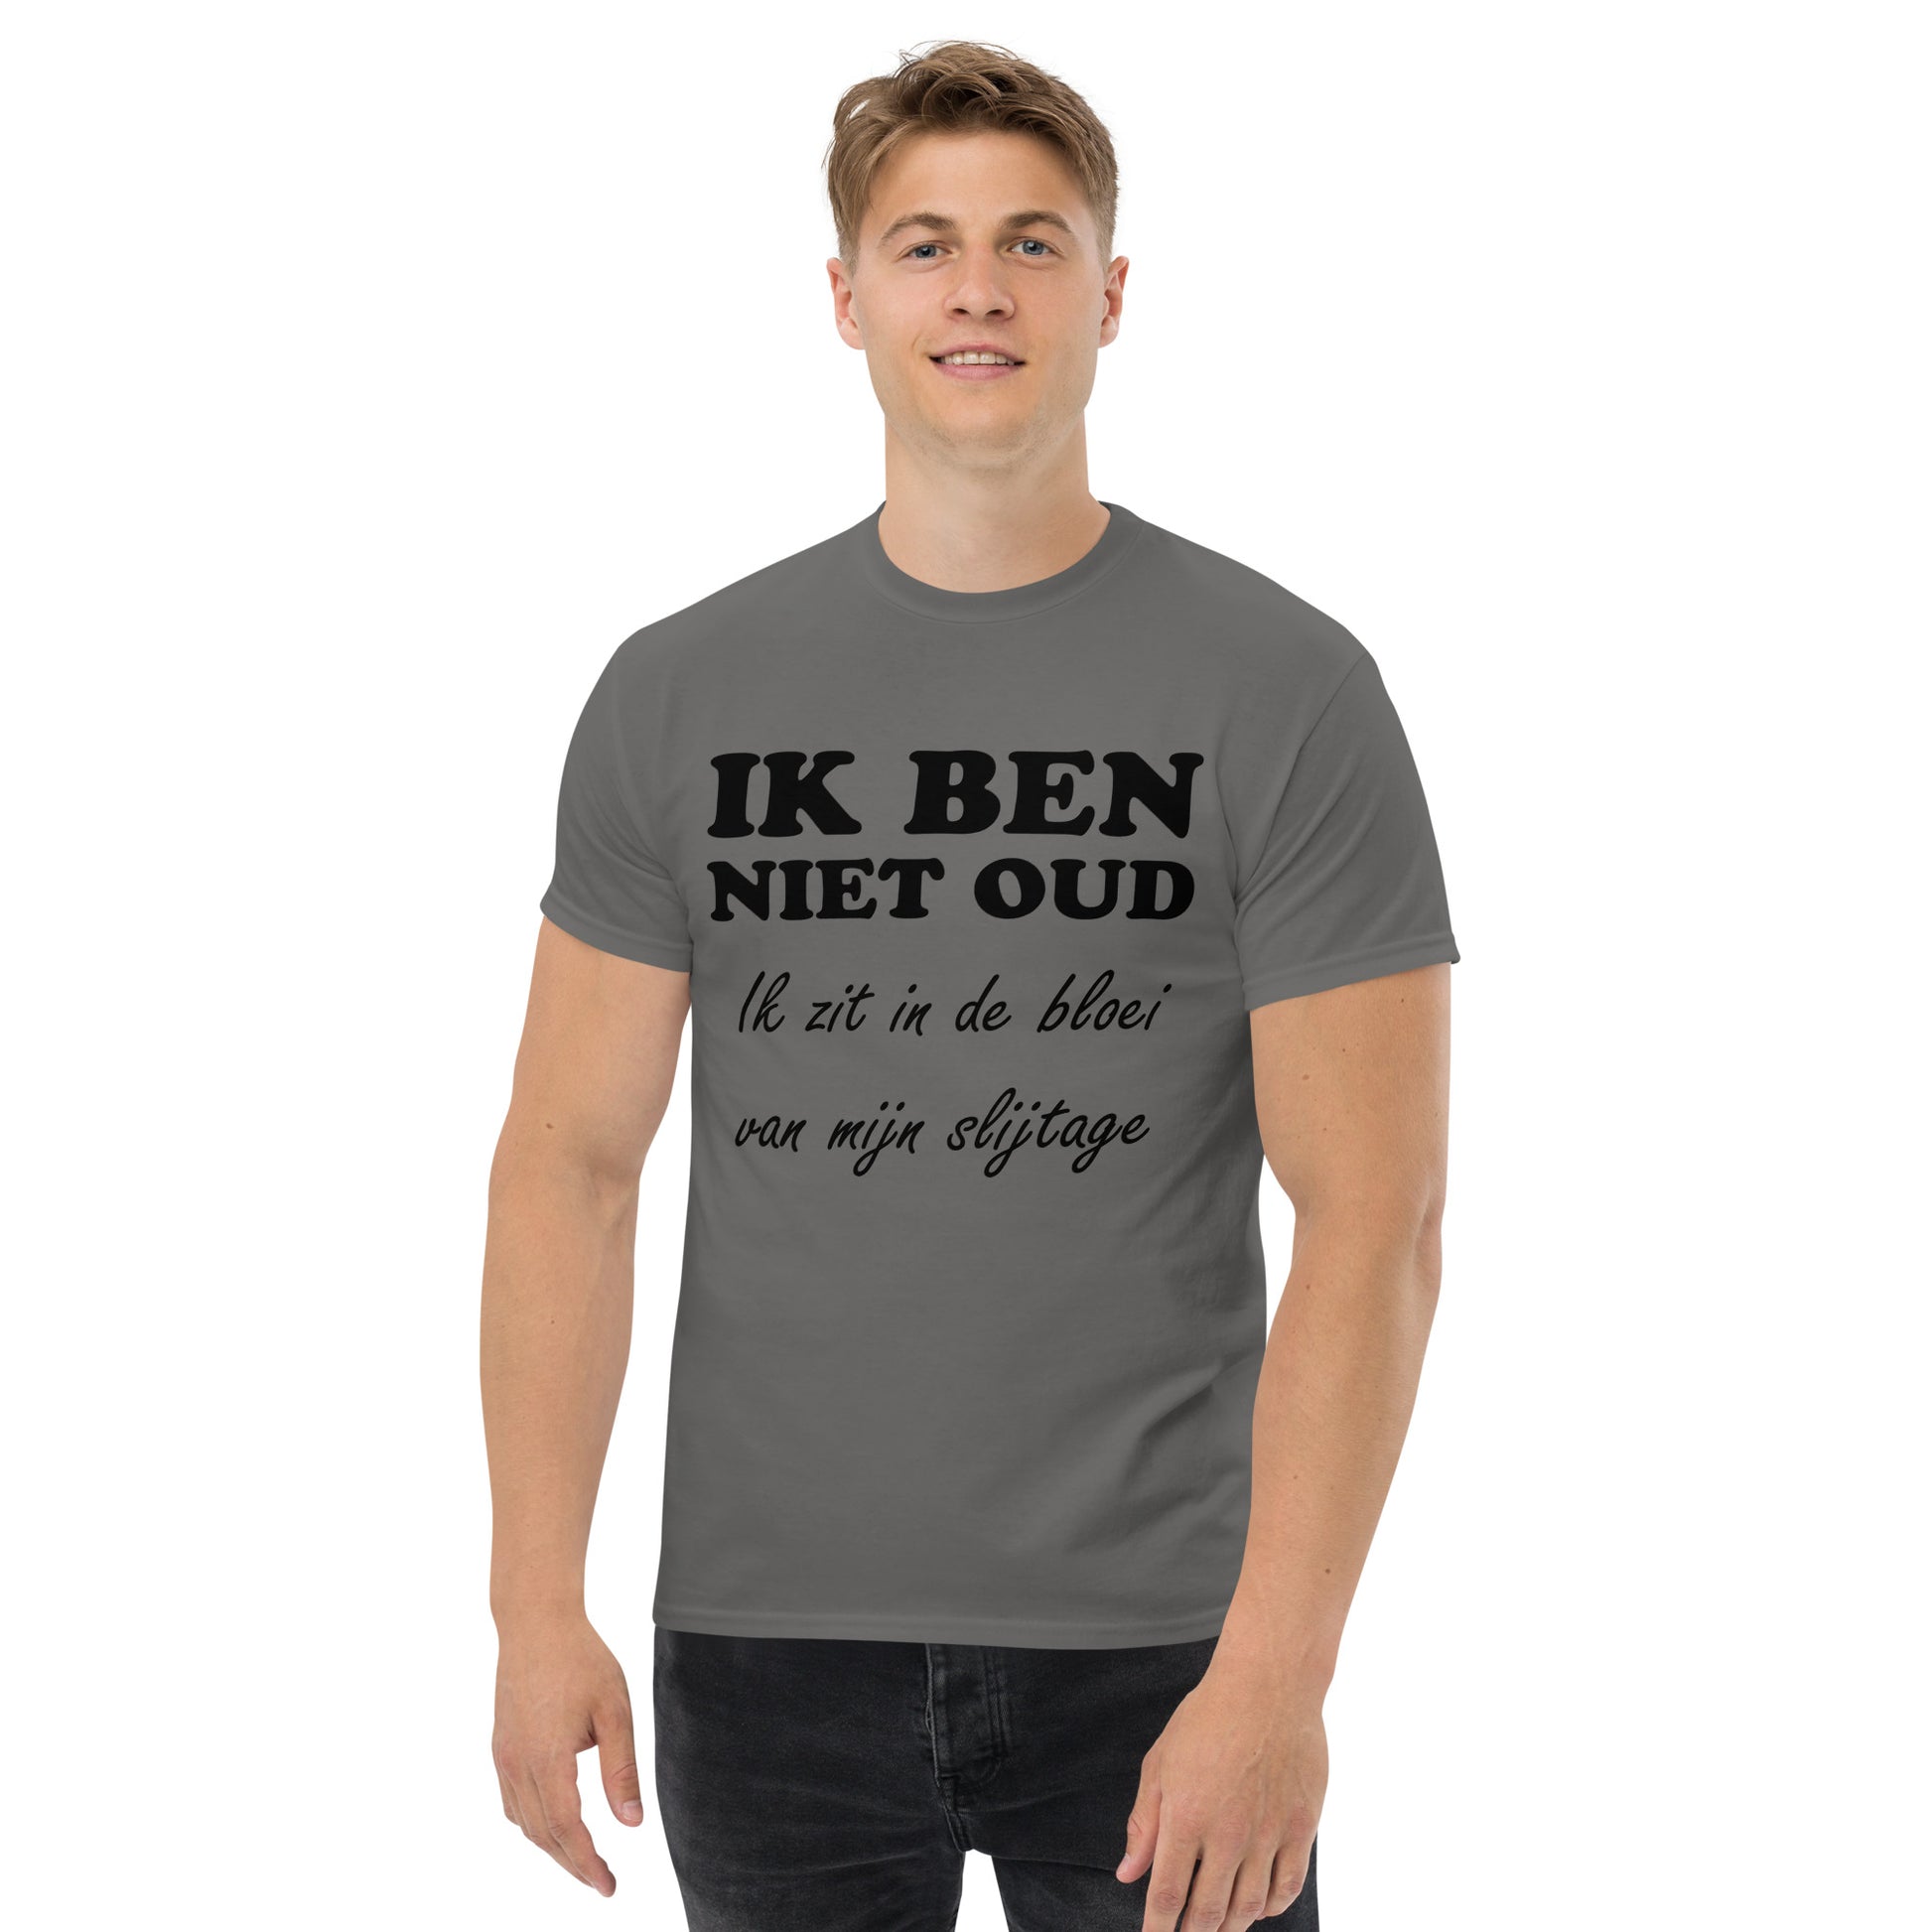 Charcoal T-shirt with the text "IK BEN NIET OUD ik zit in de bloei van mijn slijtage"